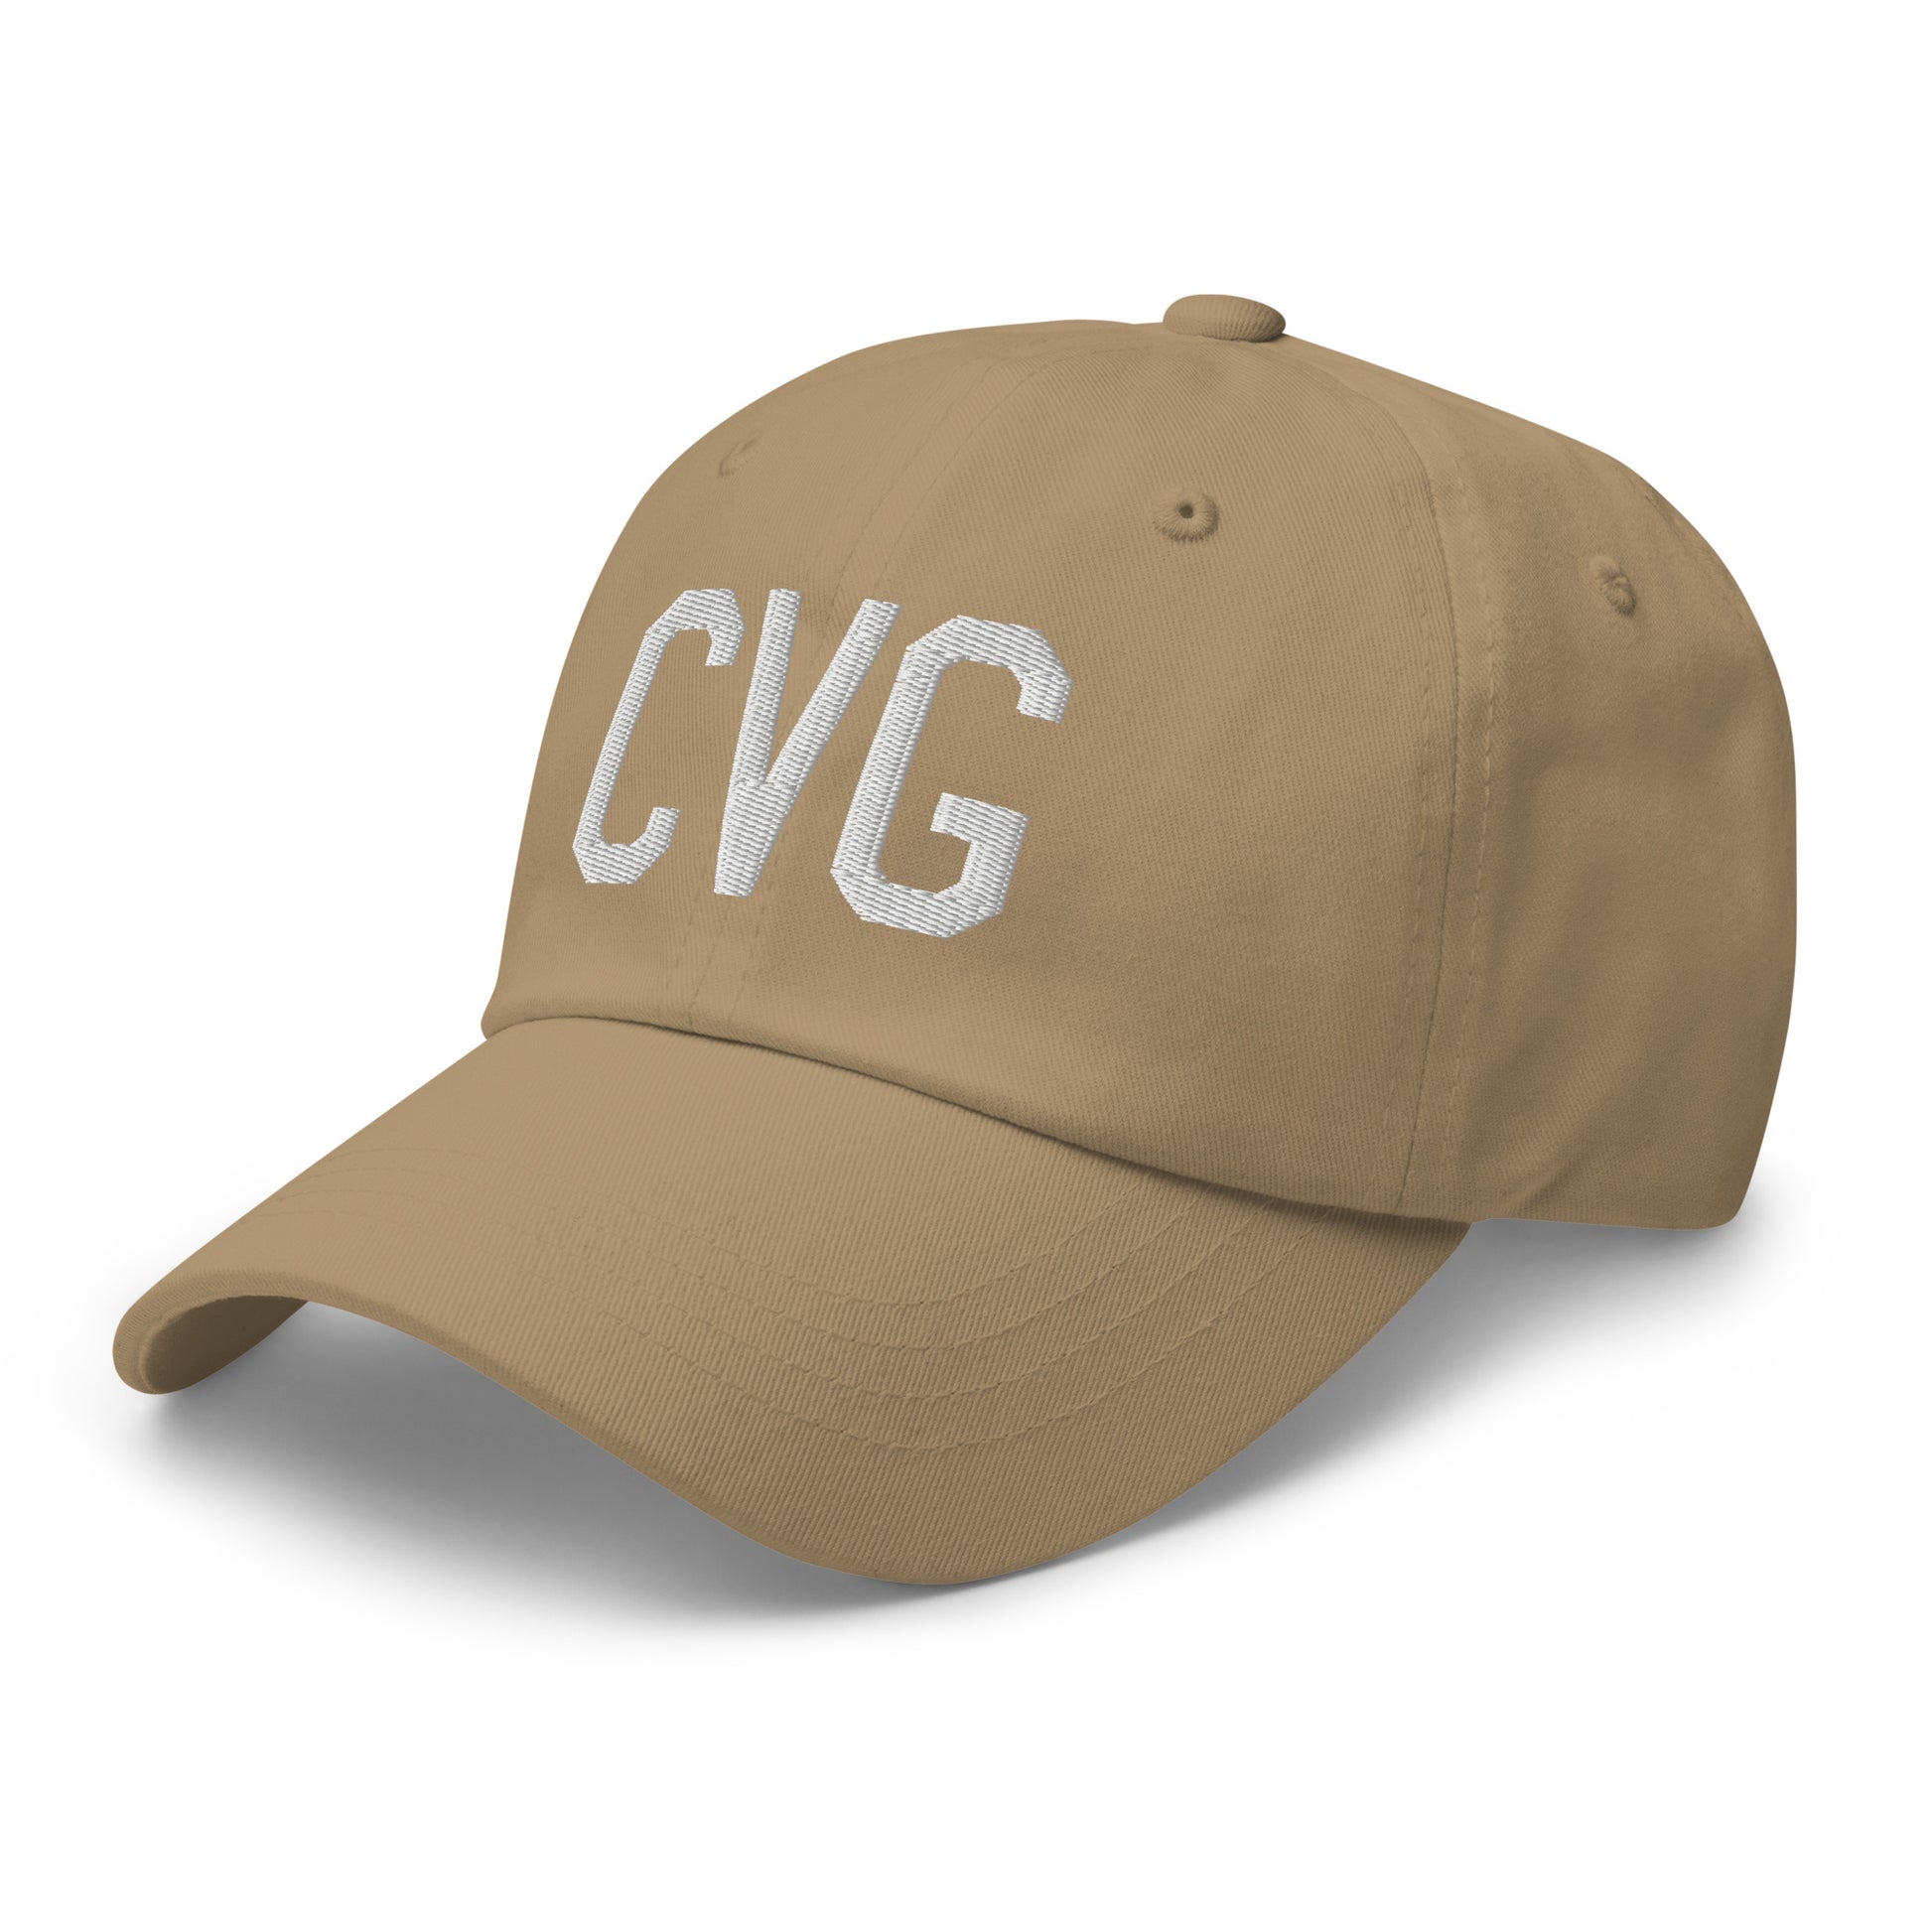 Airport Code Baseball Cap - White • CVG Cincinnati • YHM Designs - Image 24